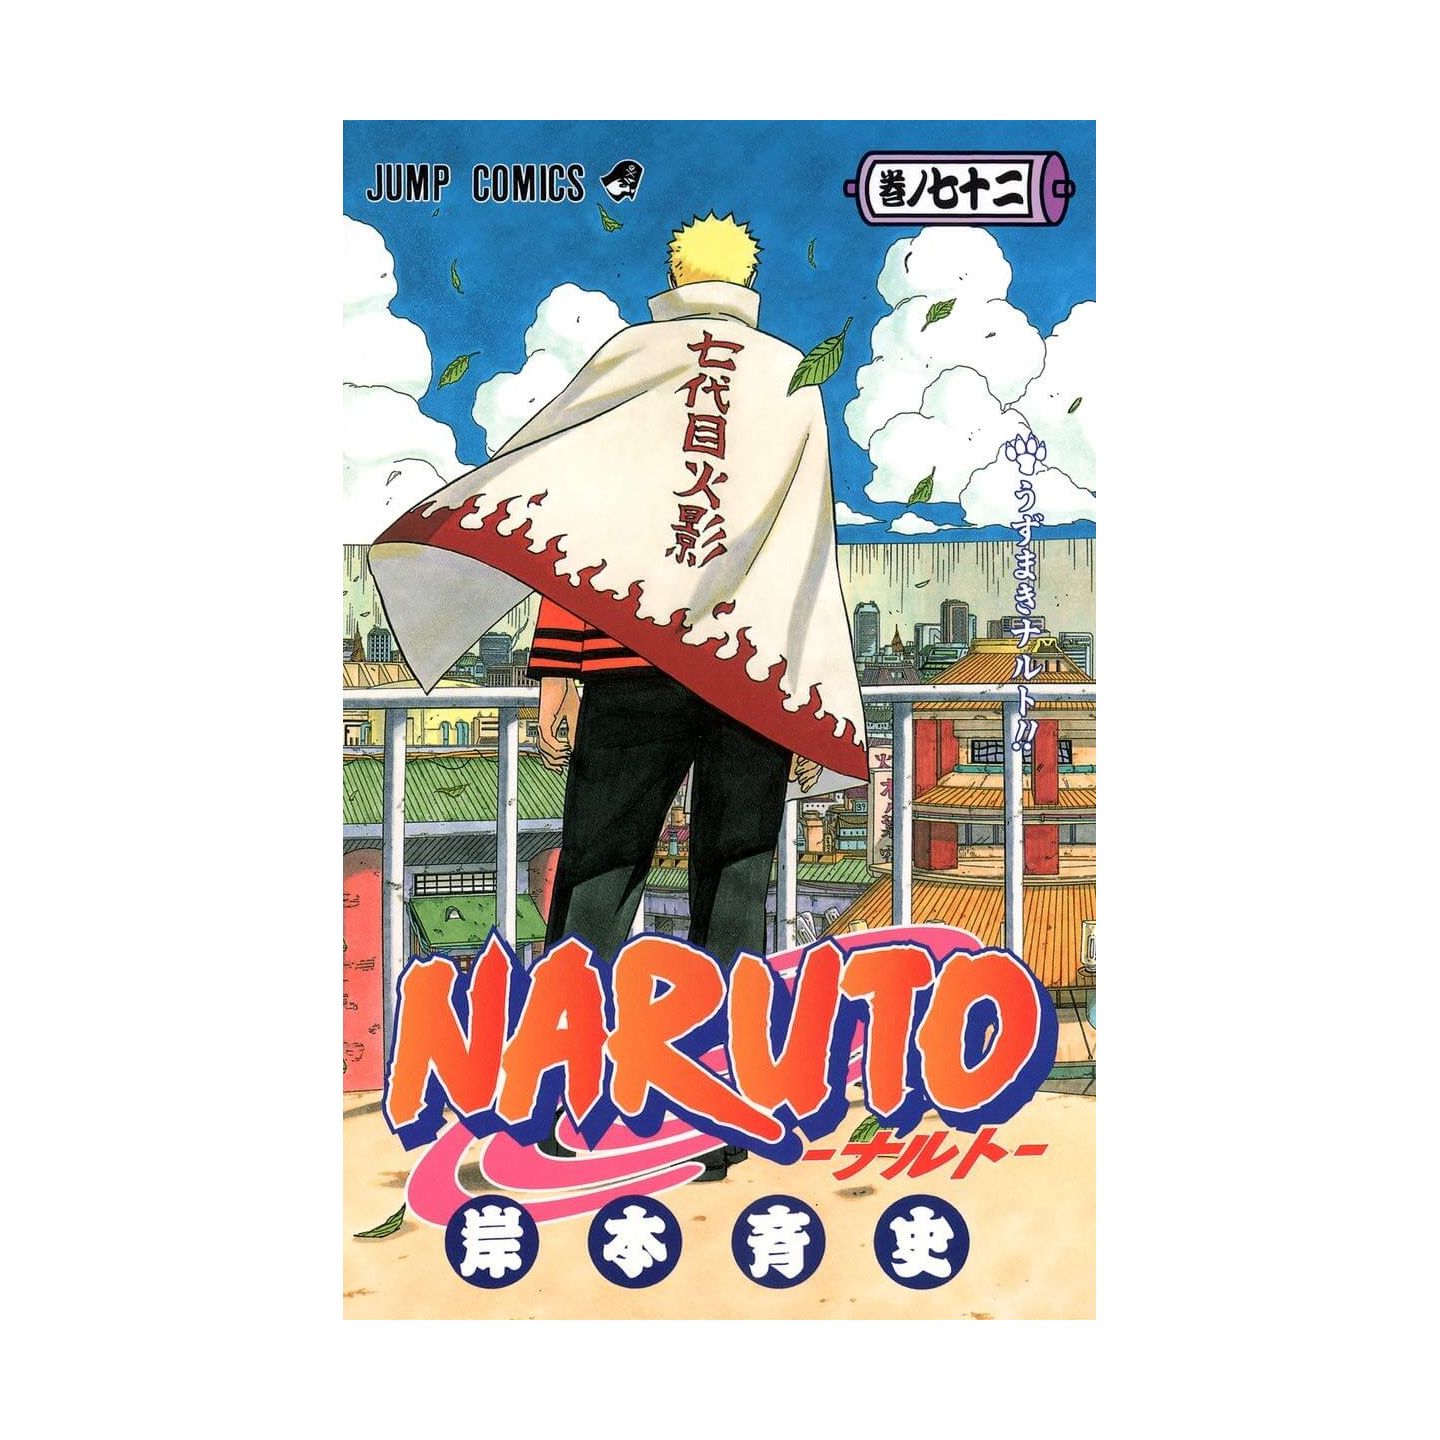 Naruto Vol 72 Jump Comics Japanese Version